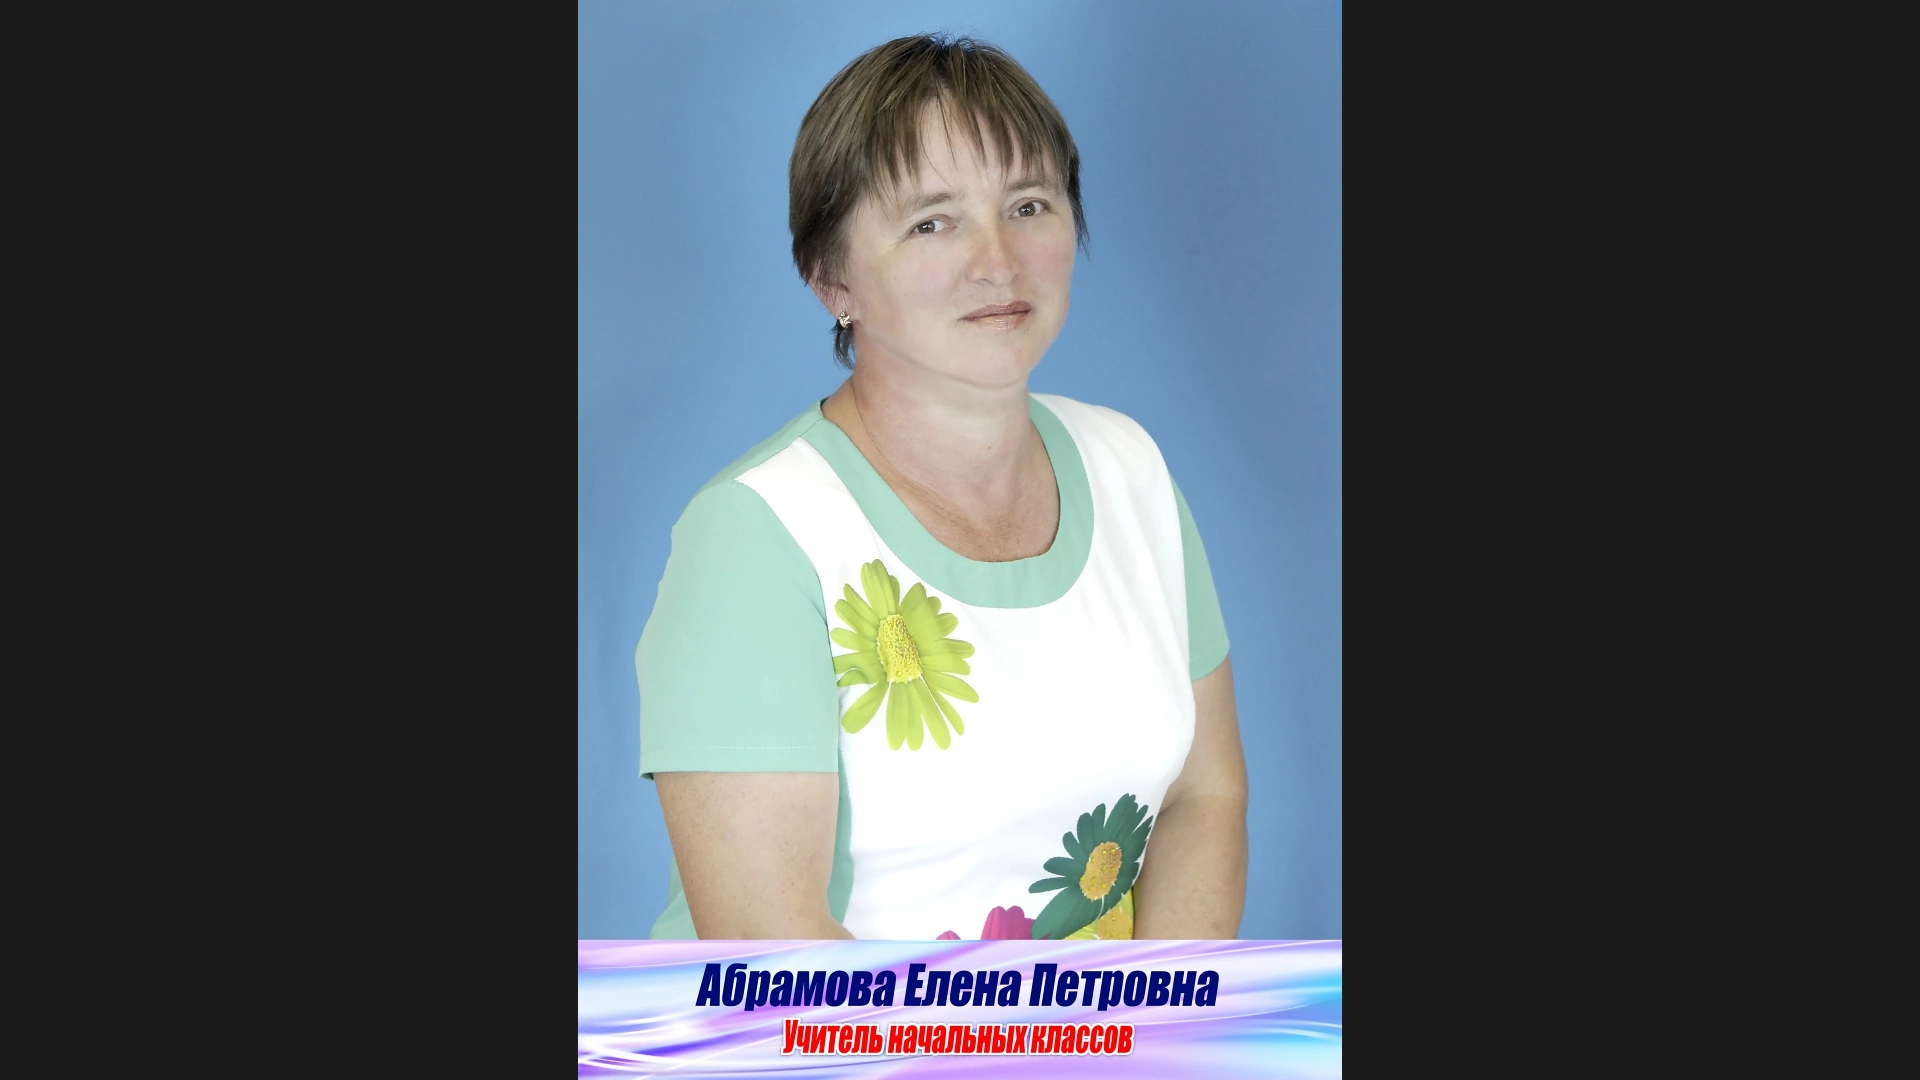 Абрамова Елена Петровна